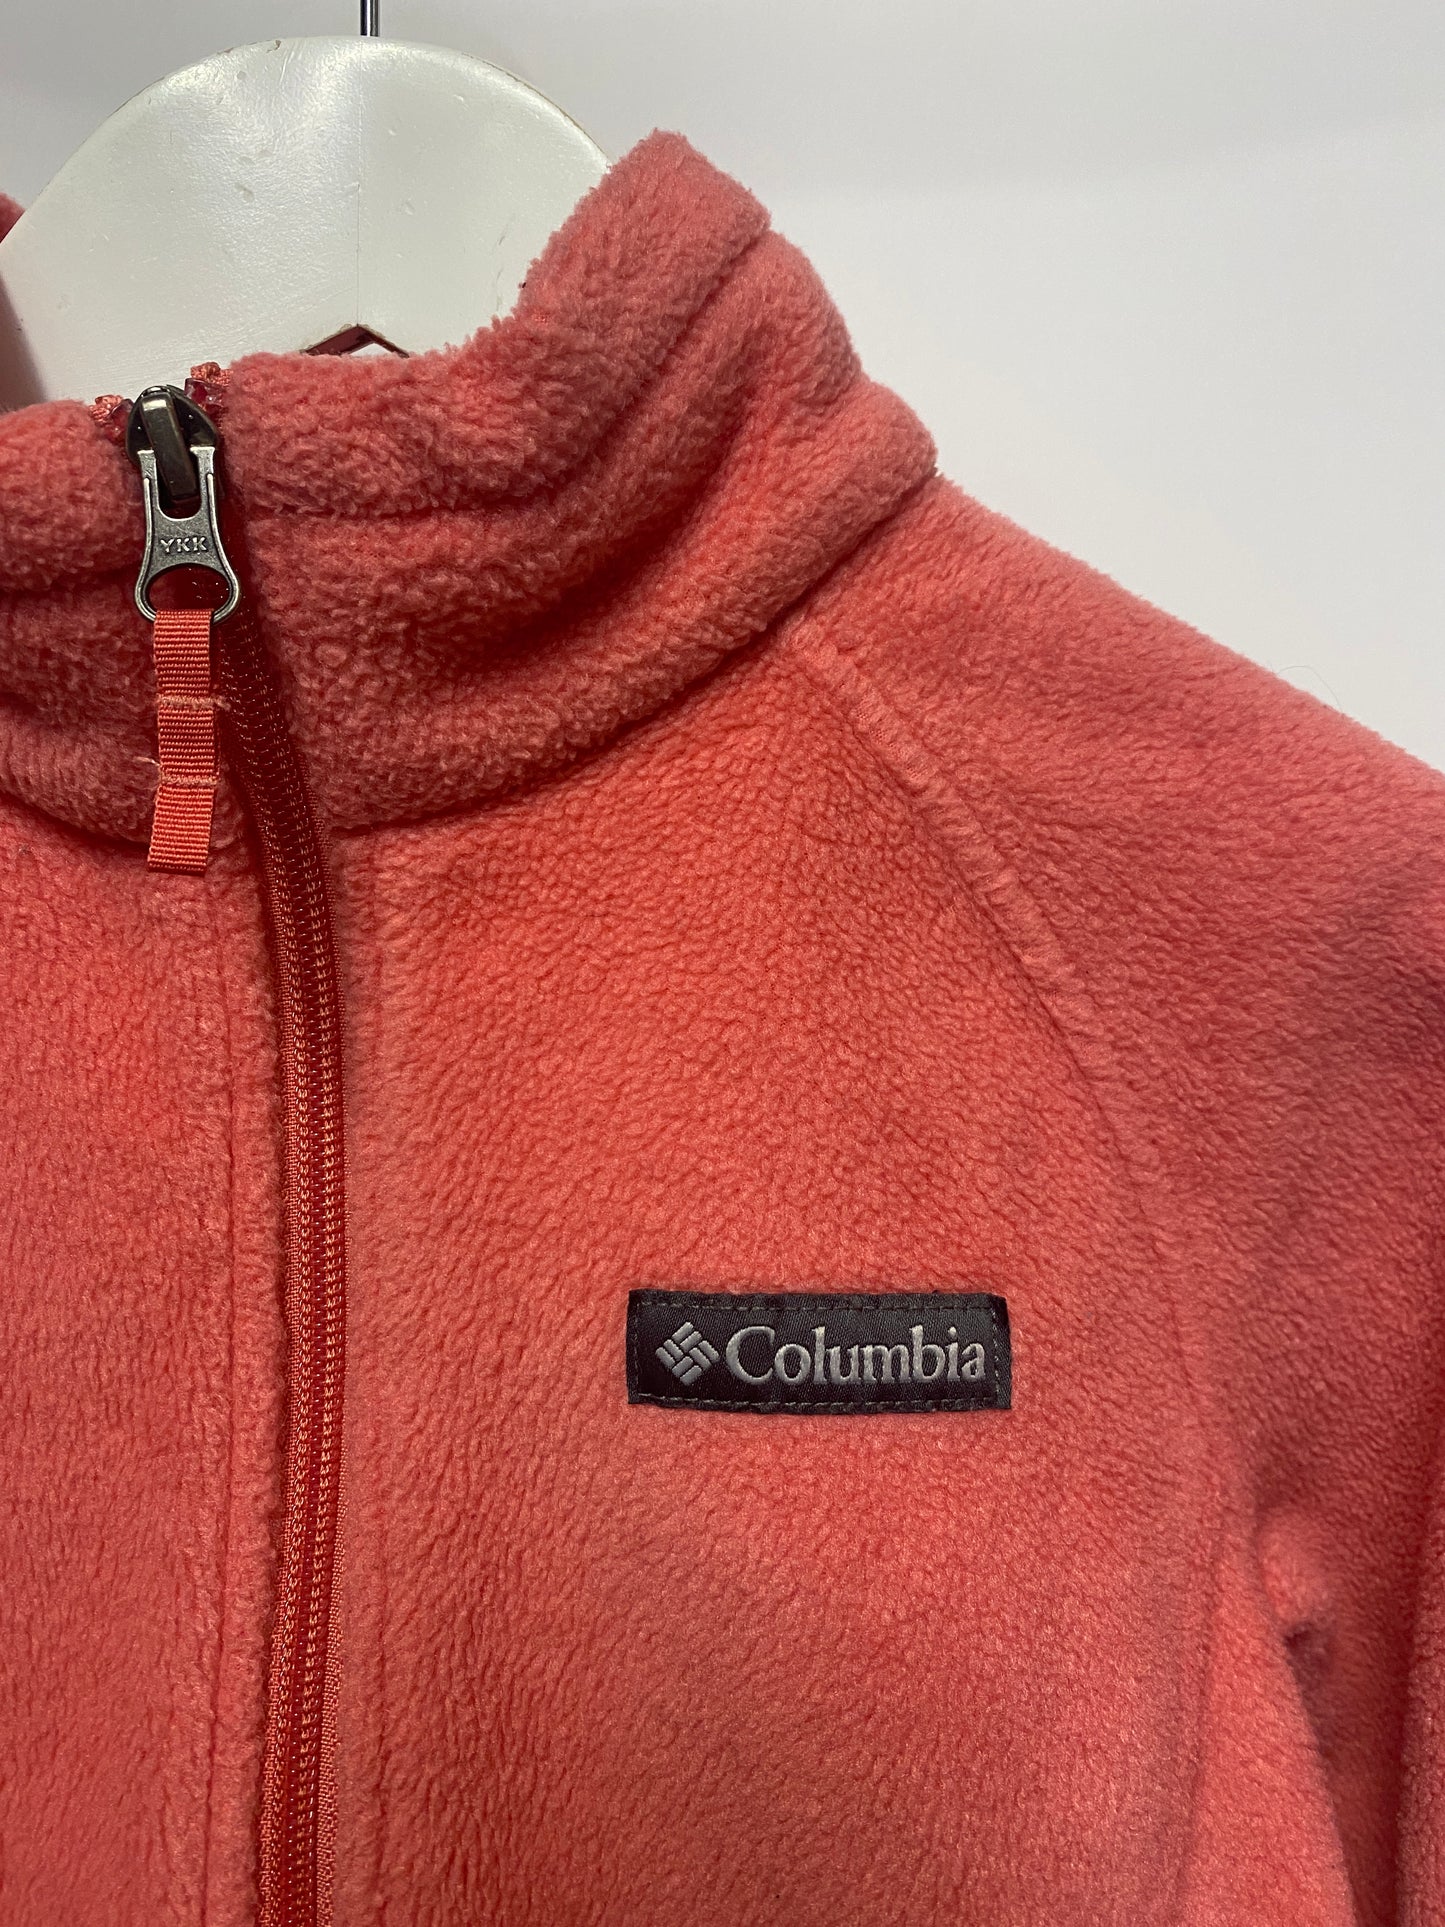 Columbia Pink Full Zip Fleece 10-12